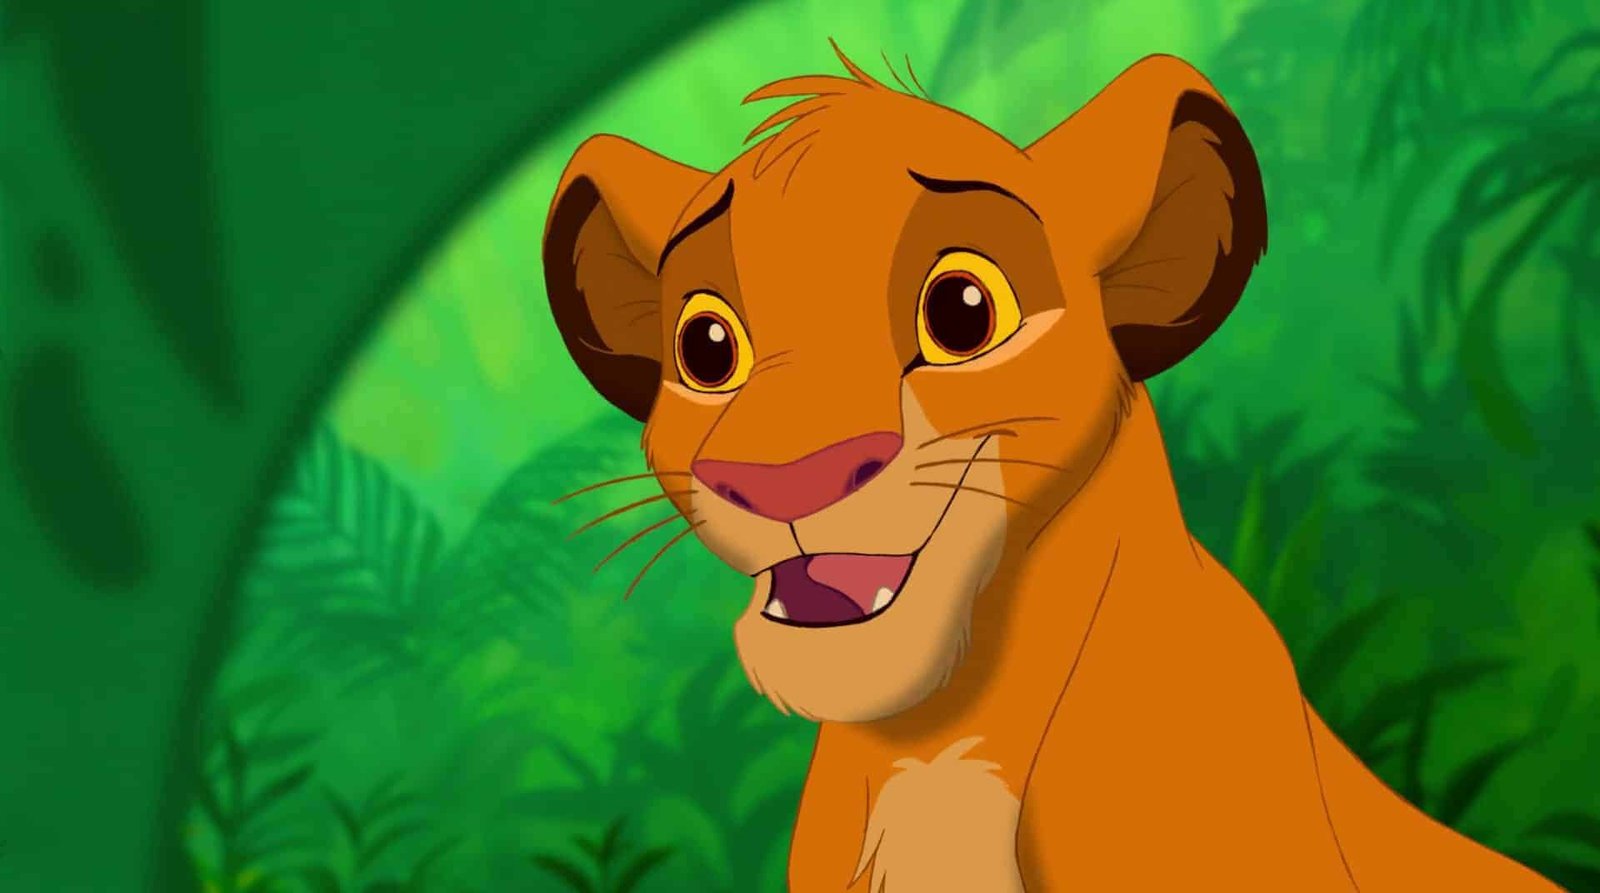 Image animée d'un jeune lion aux yeux marron expressifs et au visage souriant, sur un fond de jungle verdoyante, rappelant les personnages de Disney.